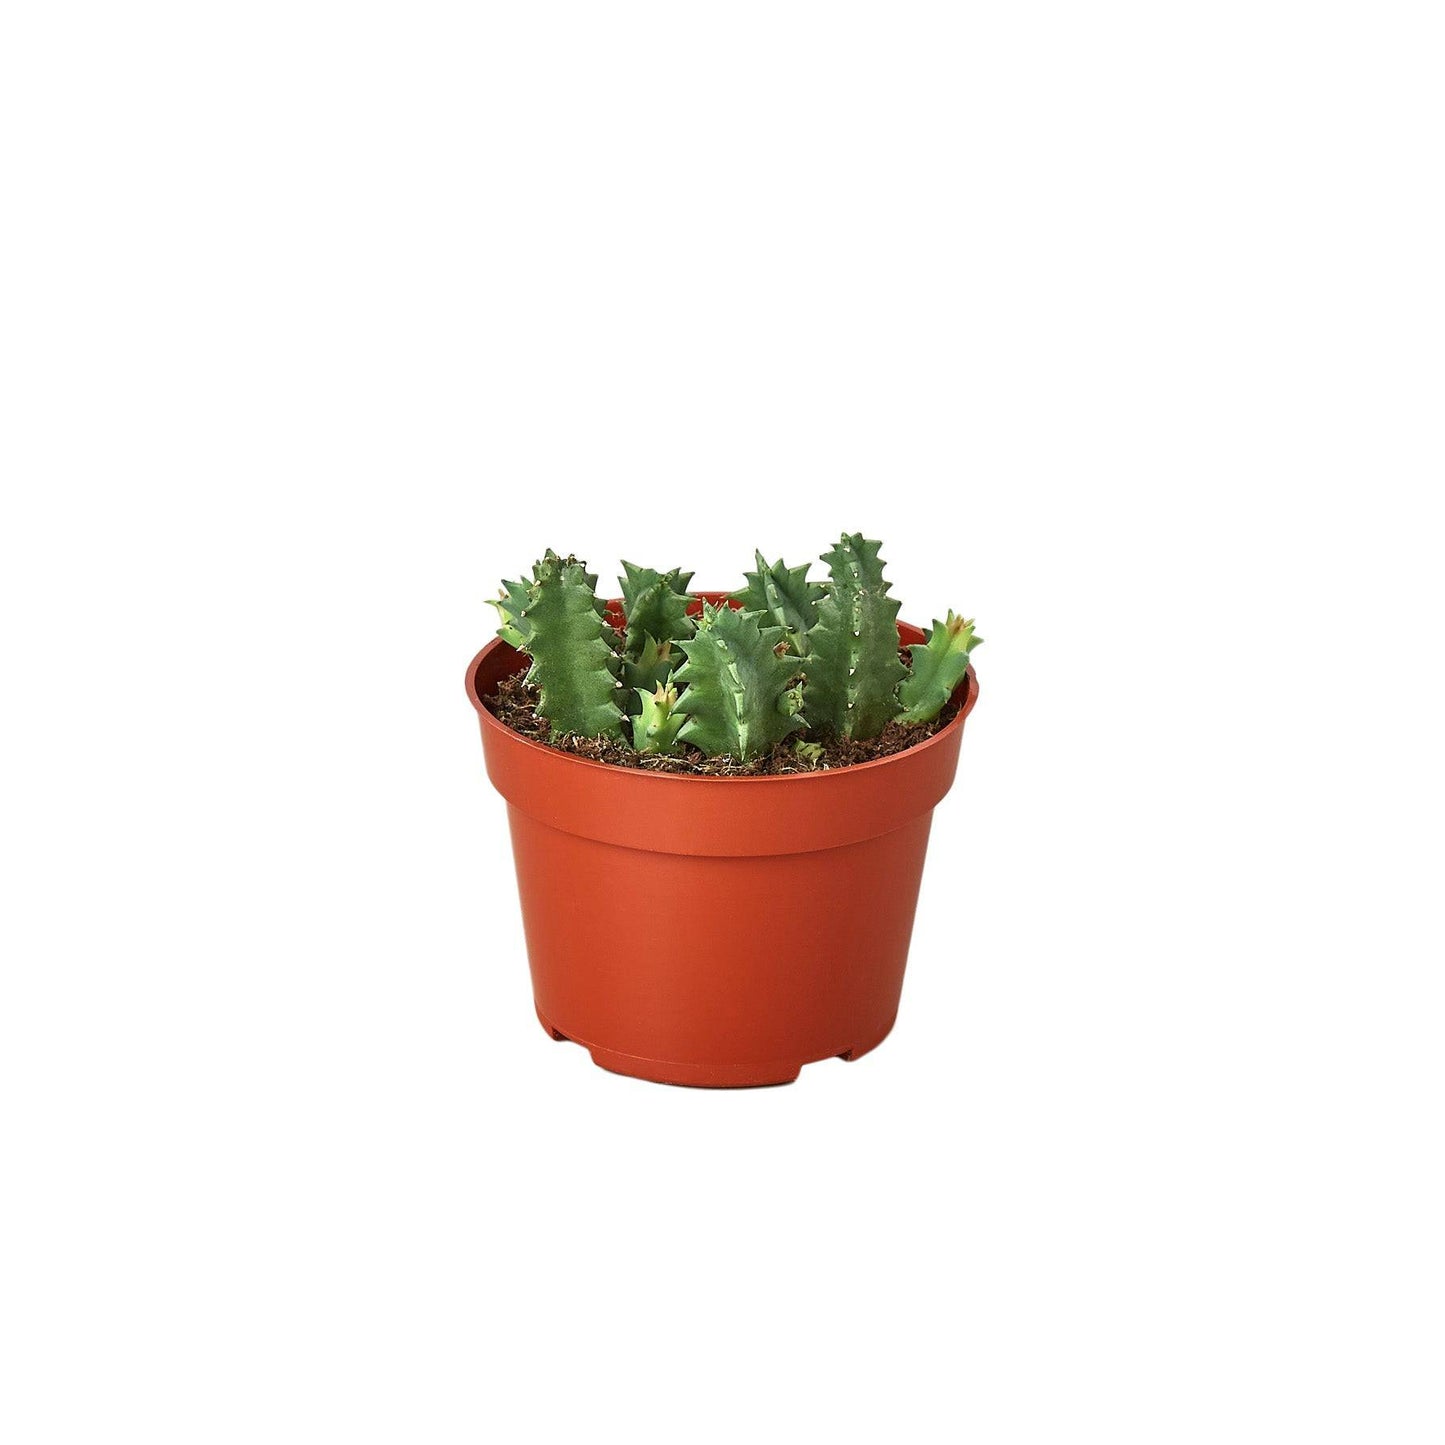 Lifesaver Cactus - Plantonio